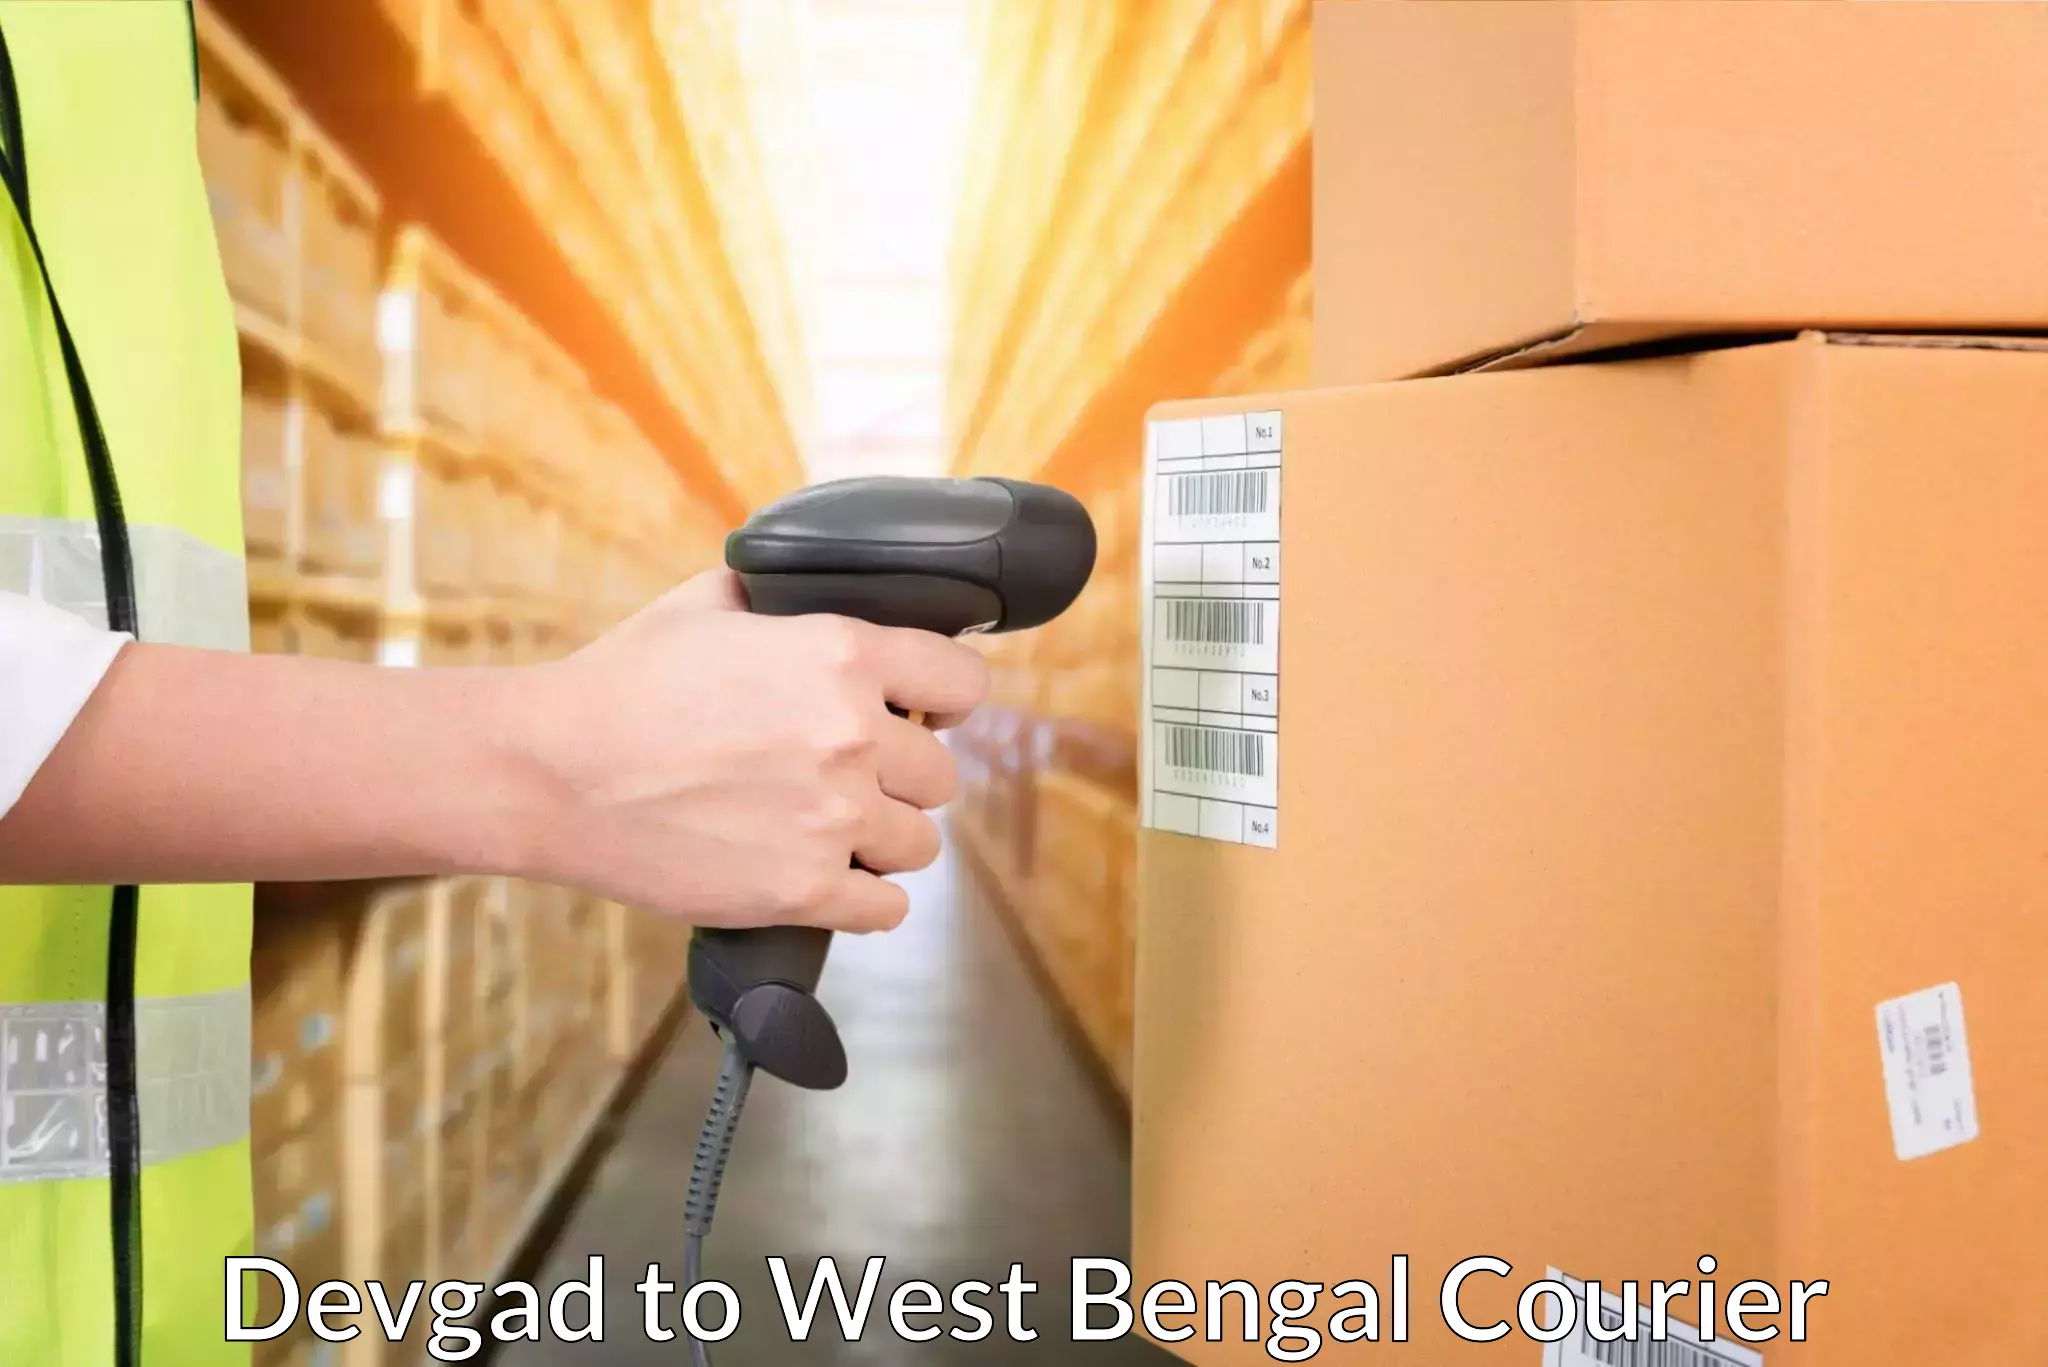 User-friendly delivery service Devgad to Sonamui